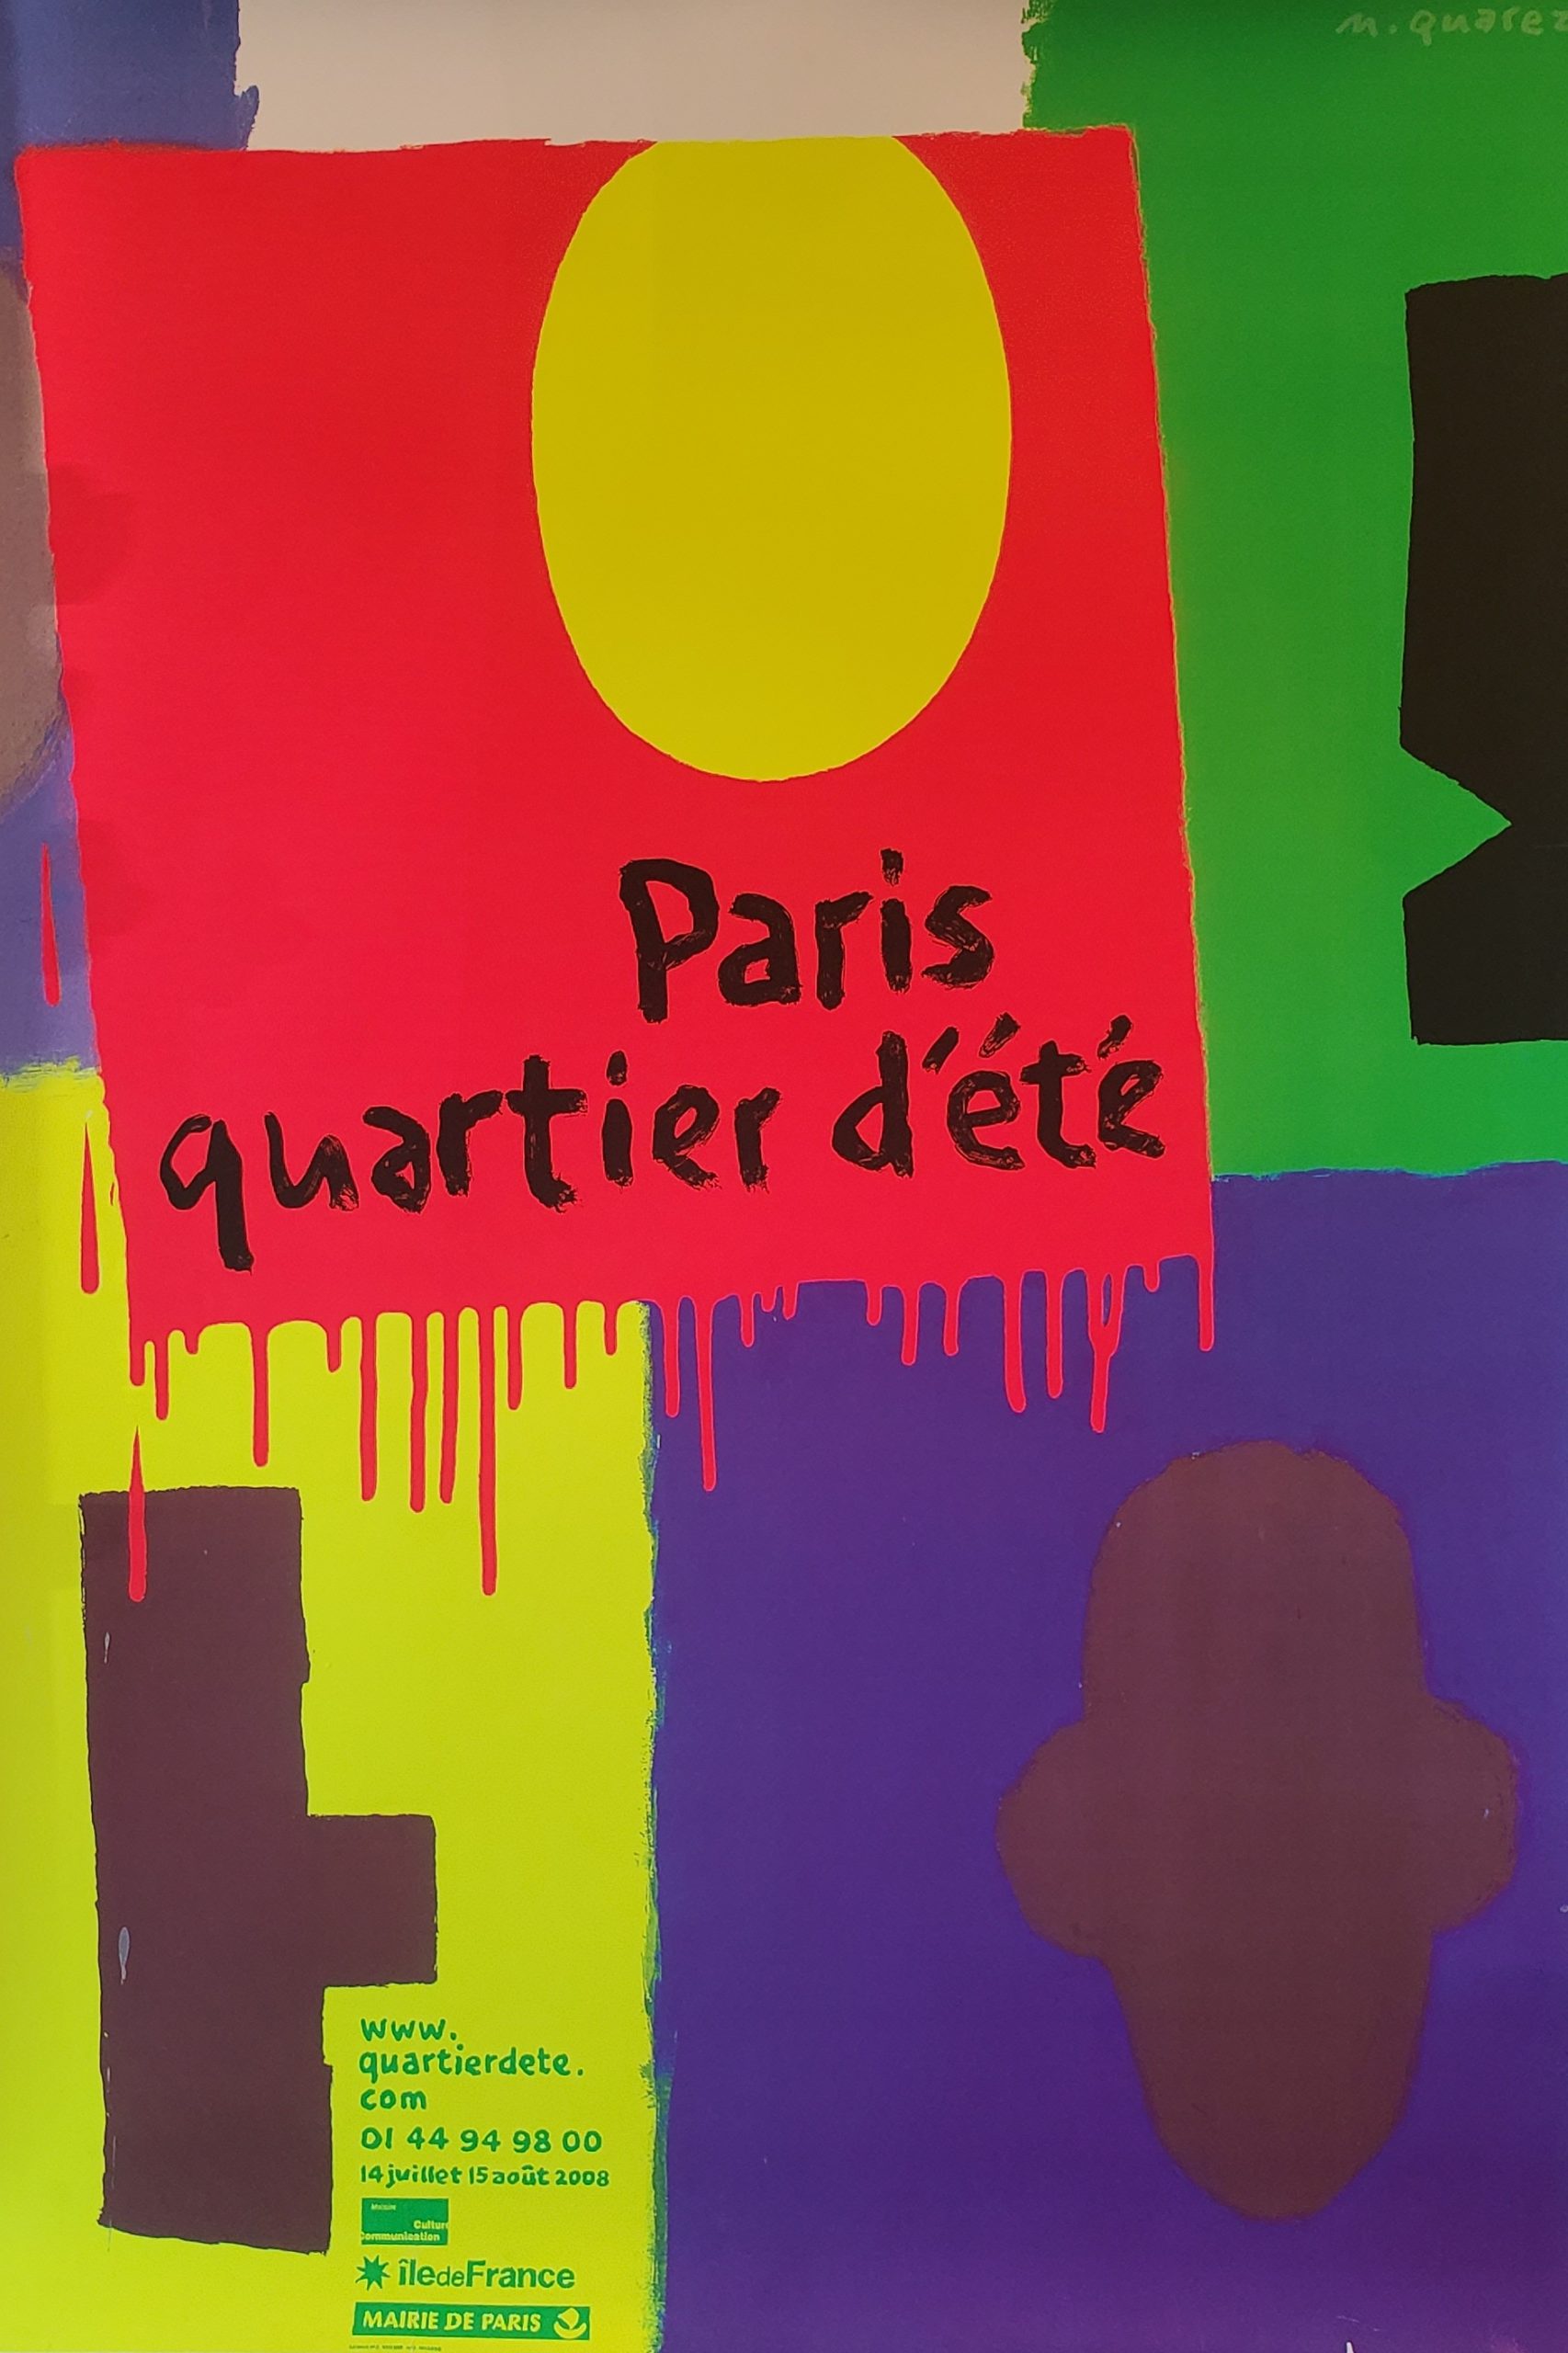 Paris Quartier d'ete Quarez Original Vintage Poster